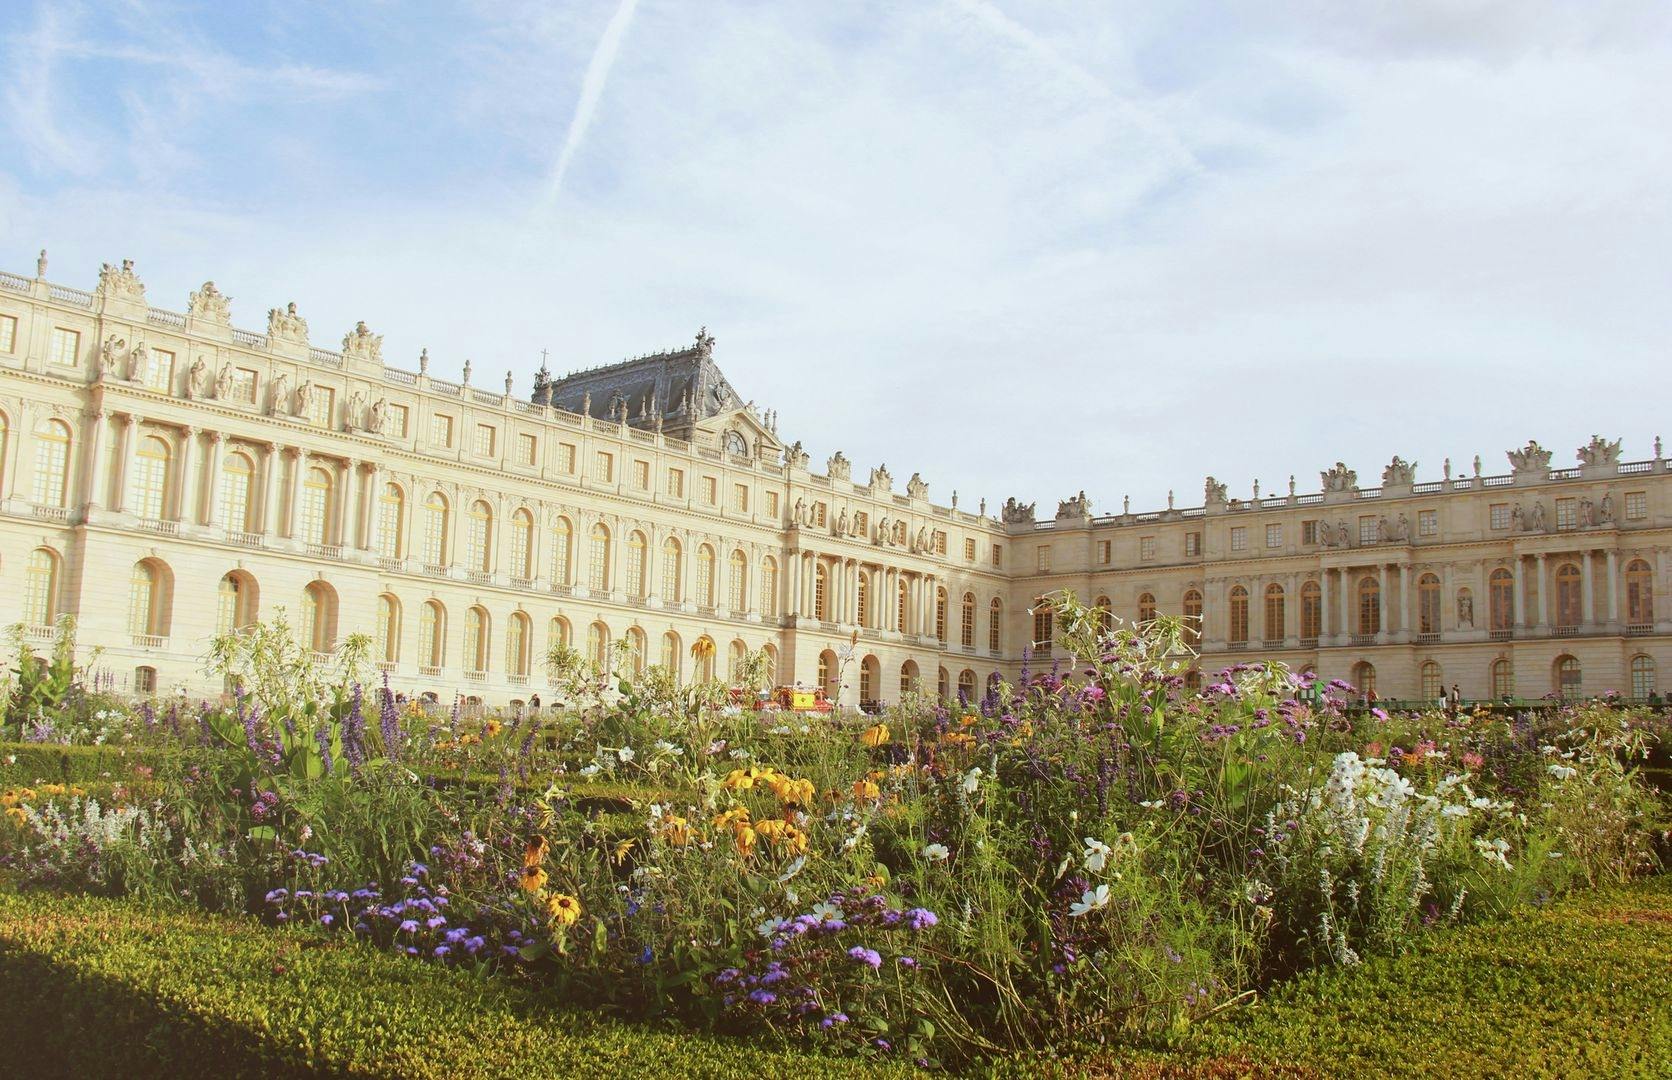 Biglietti per la Reggia e i Giardini di Versailles con tour audio su app